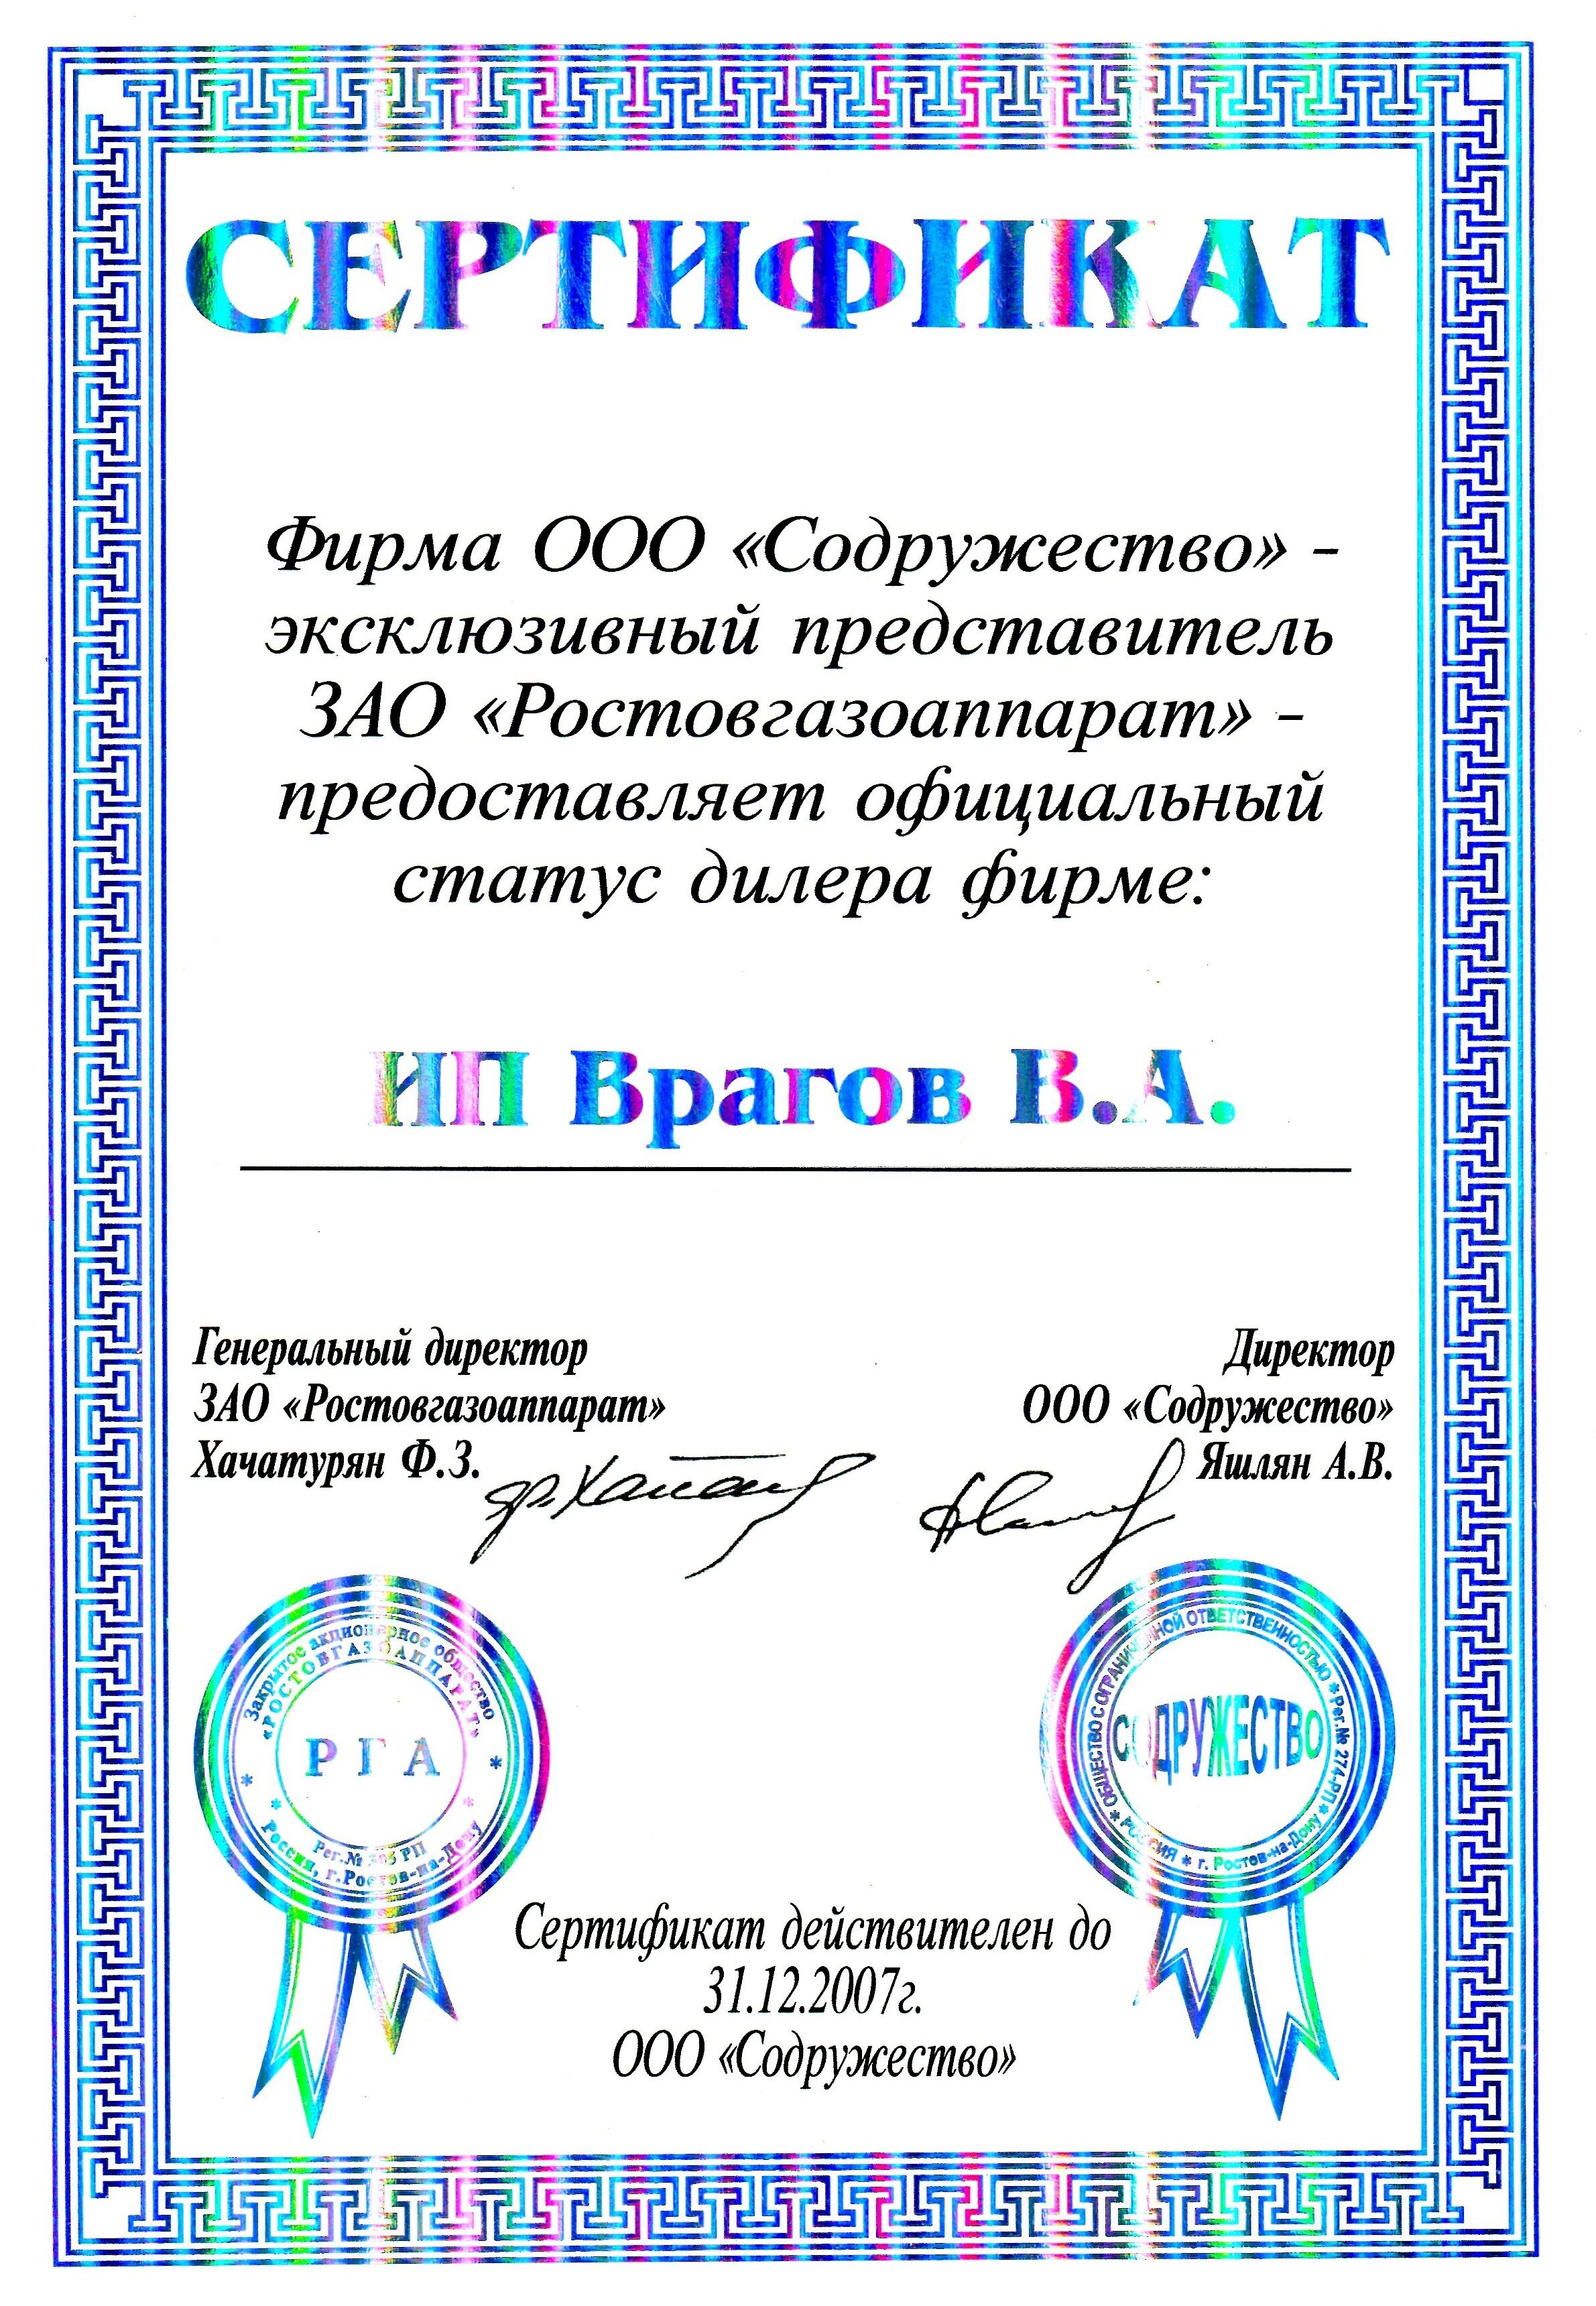 АО Содружество ООО Ростовгазаппарат 2007 г.